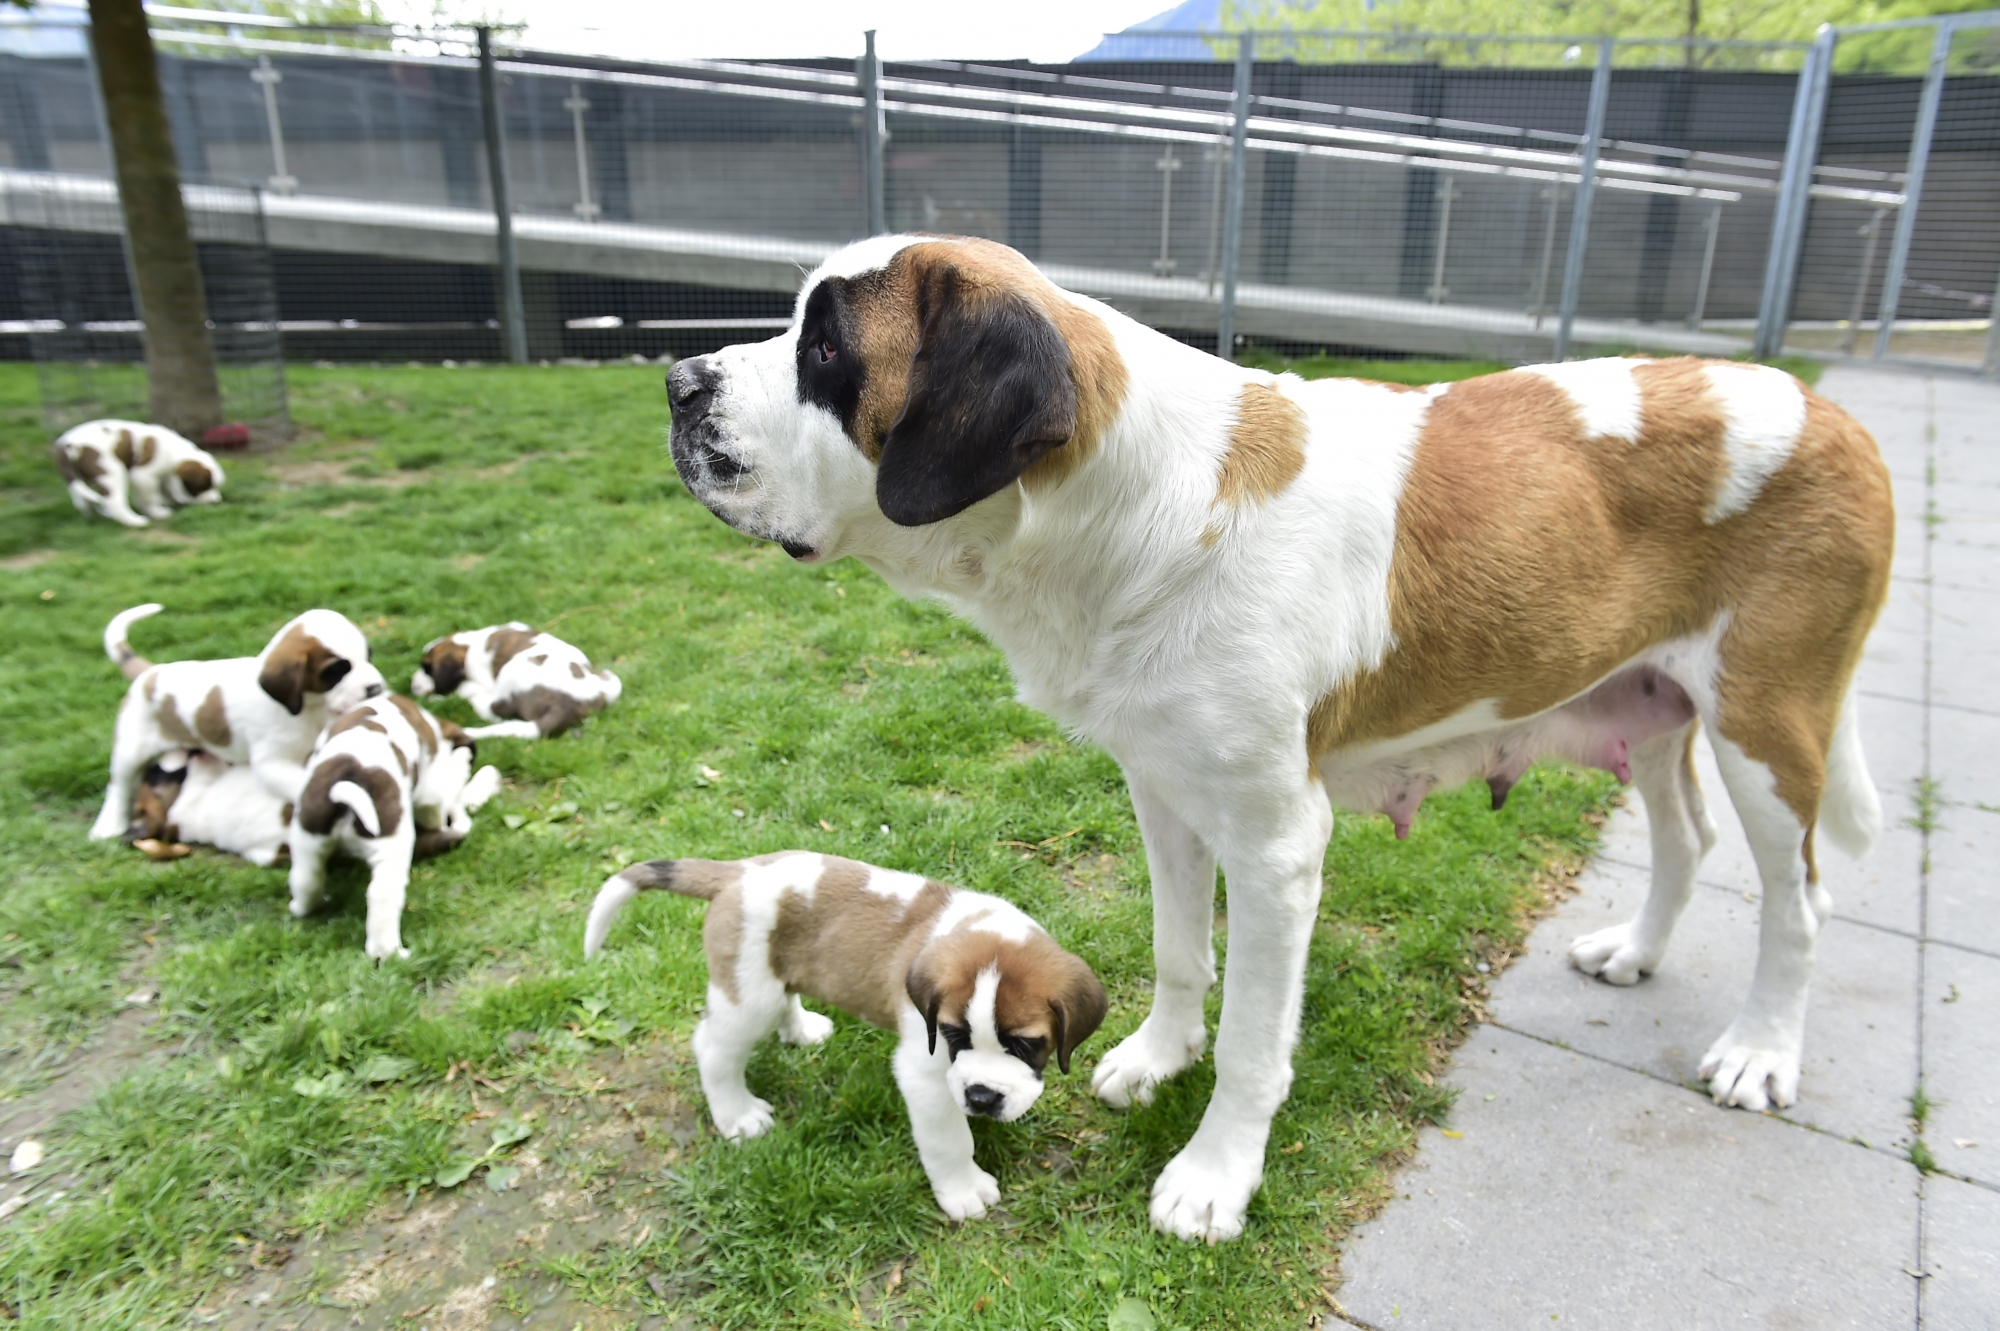 La fondation veut attribuer symboliquement chaque chien de l'élevage à une personnalité suisse.